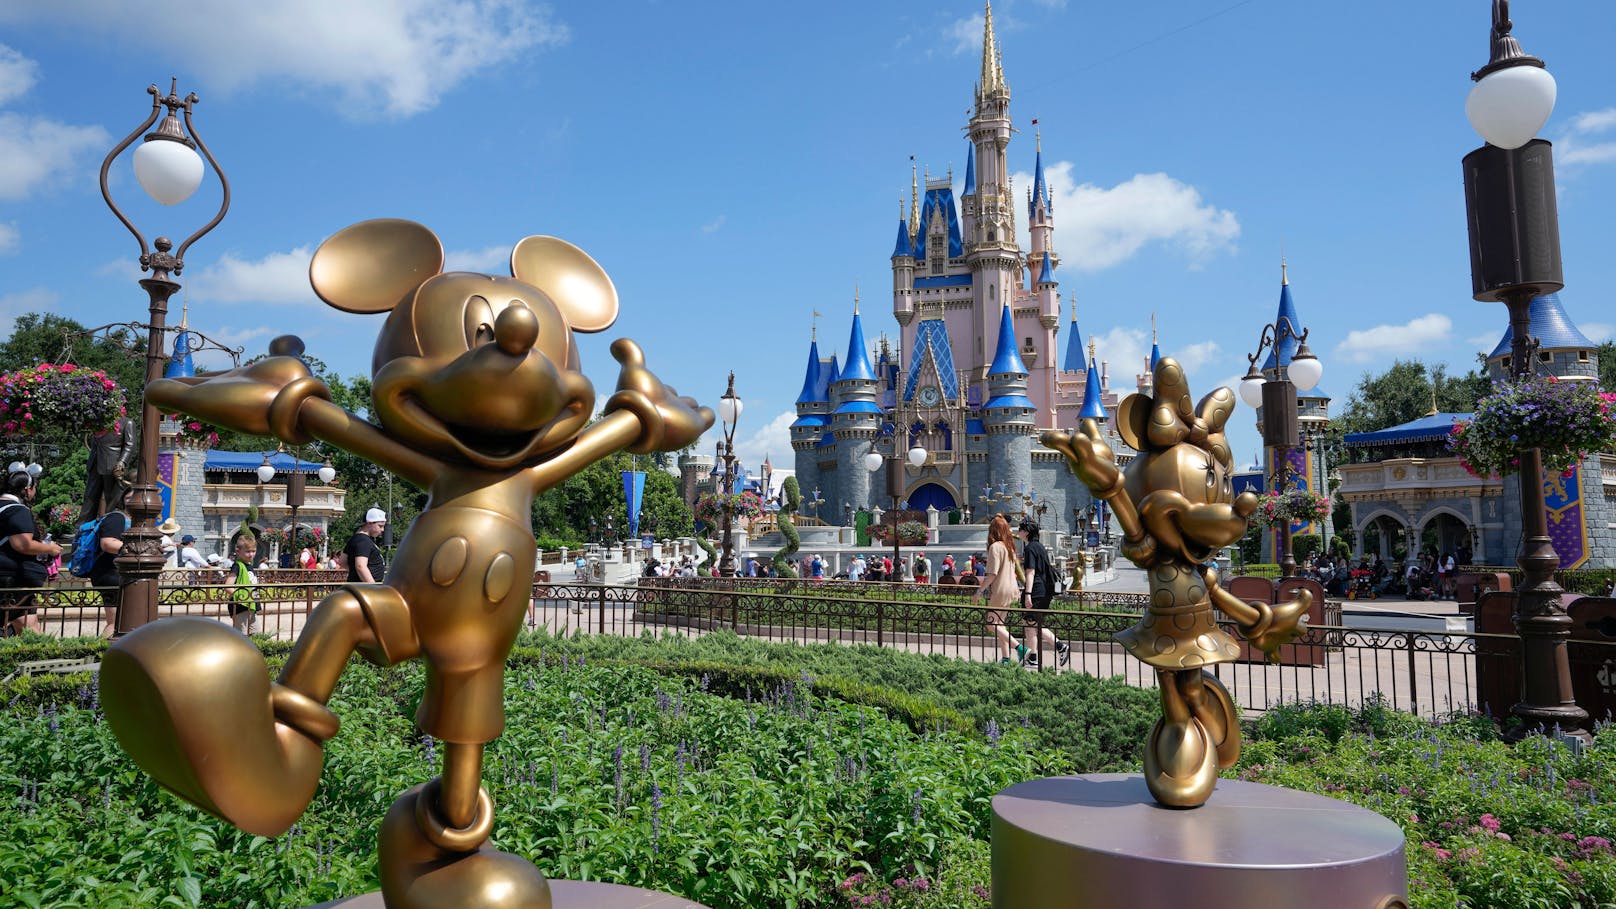 Entbinden mit Mickey – Geburt in Disney World?